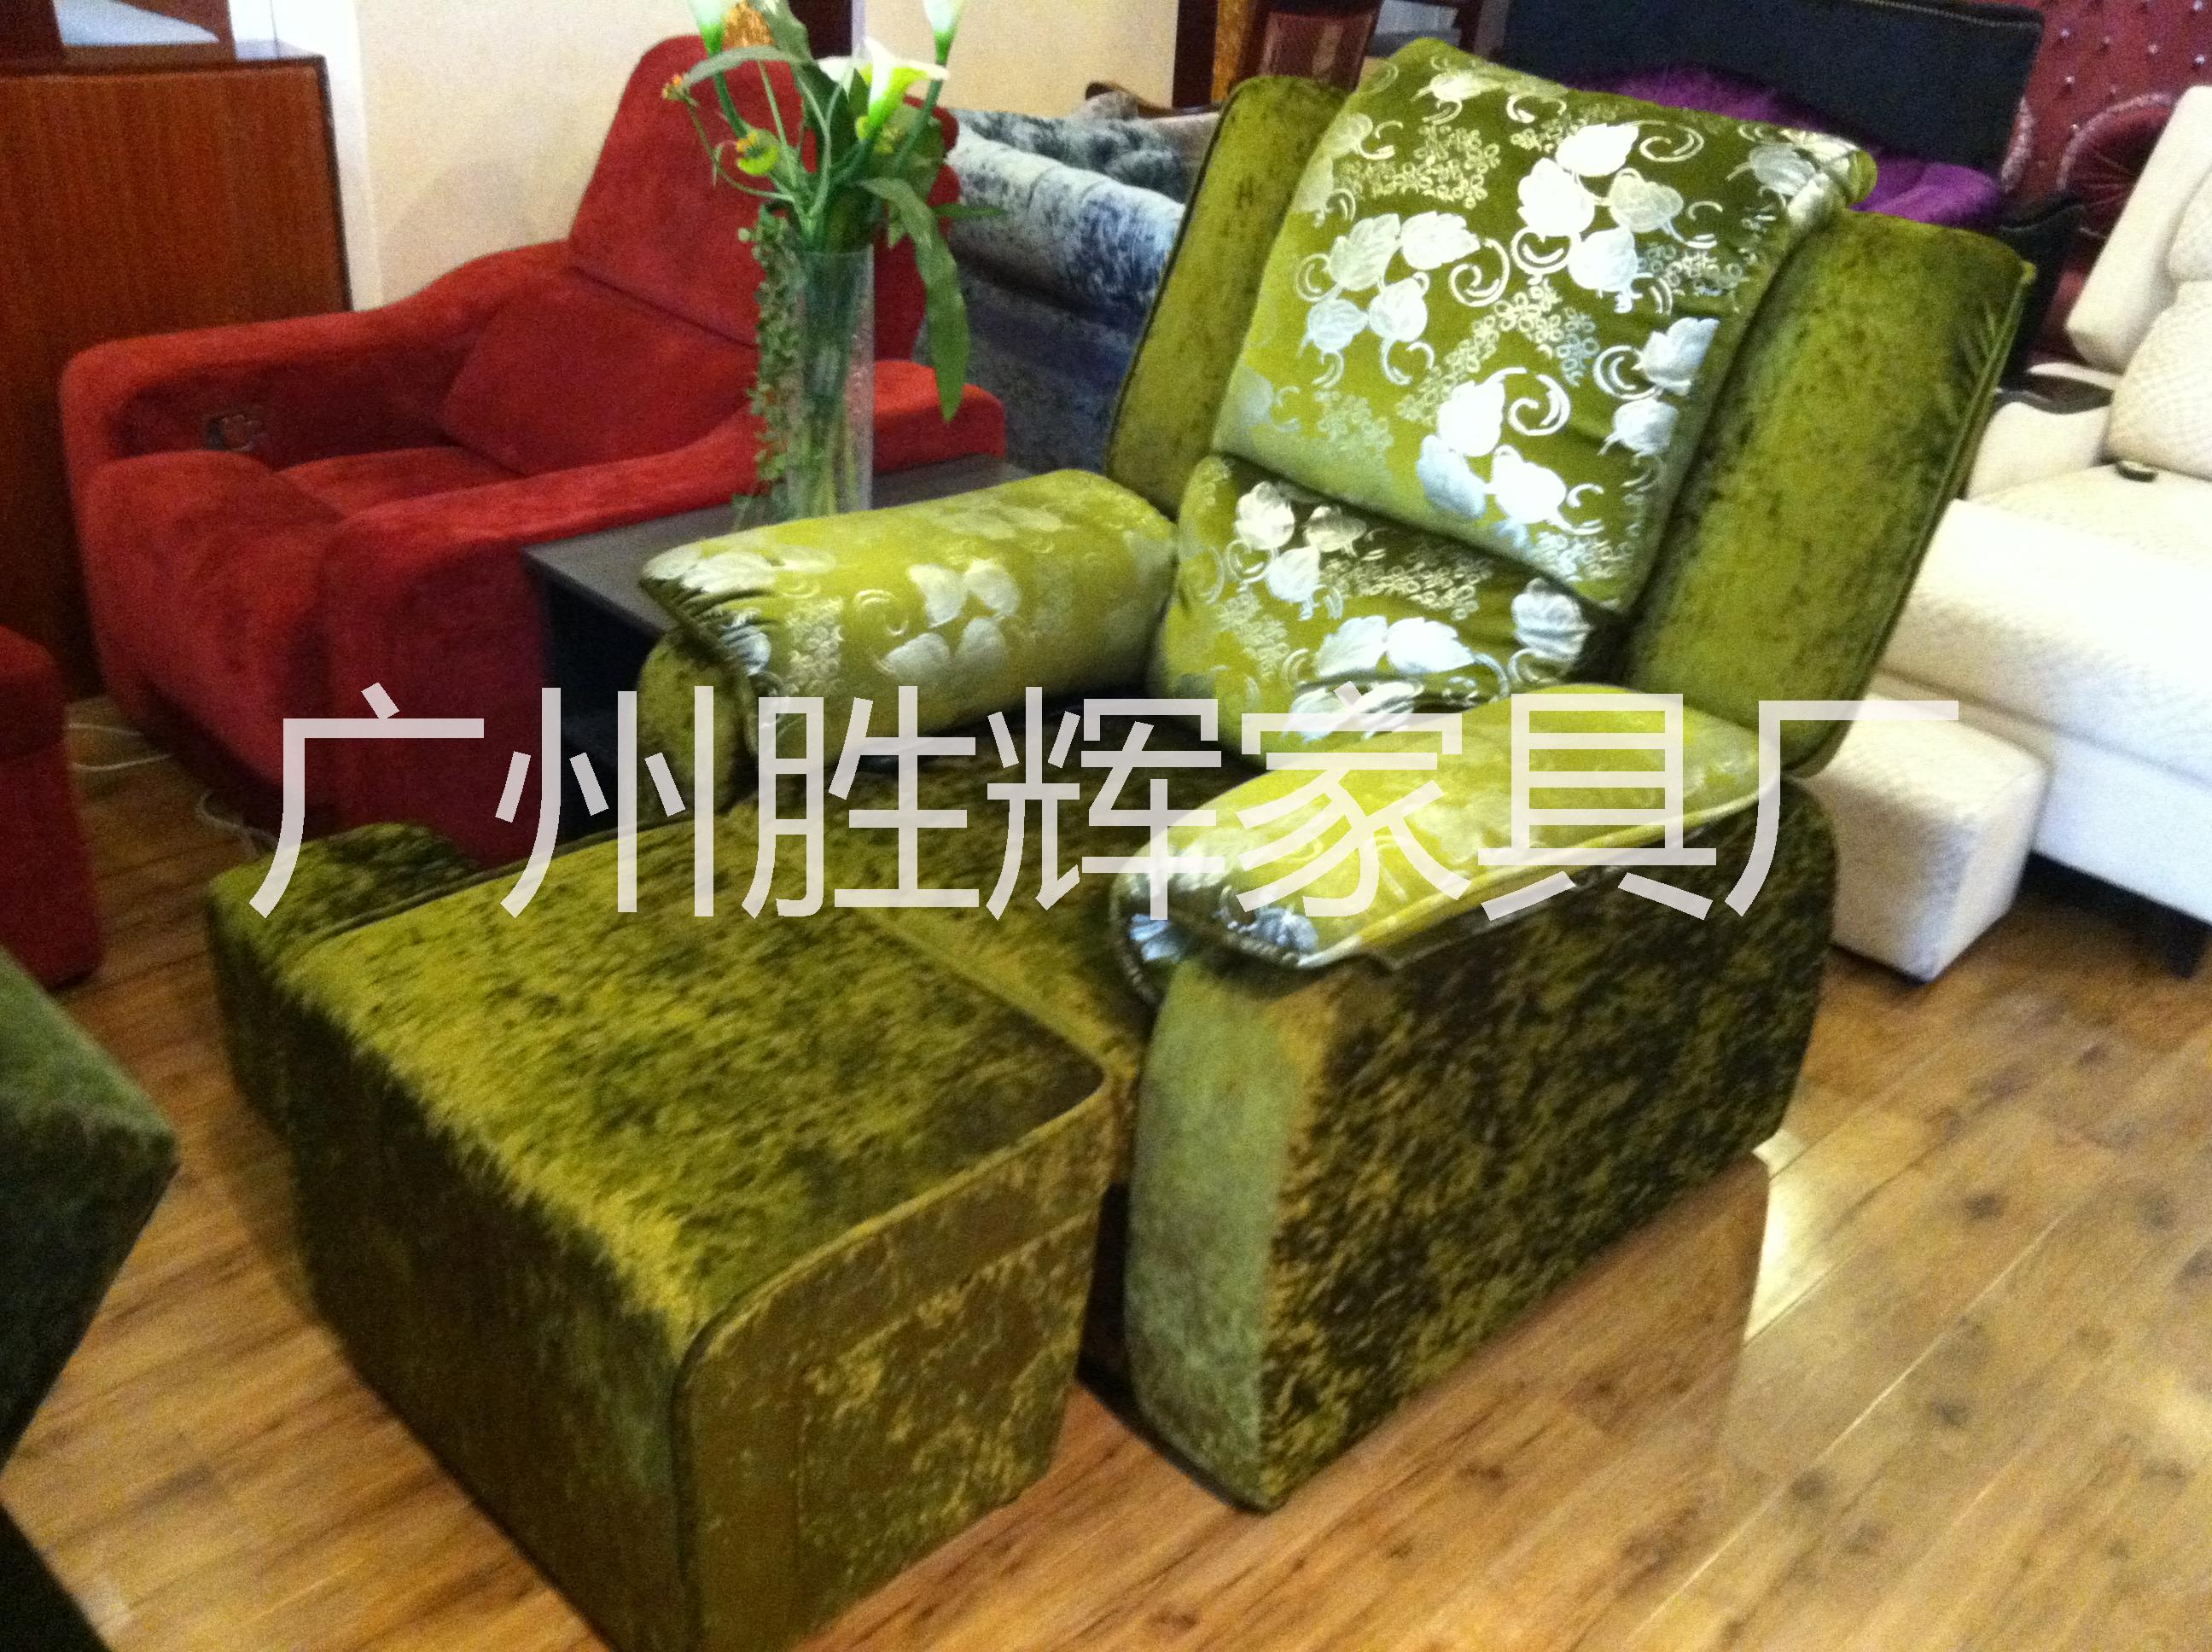 广州市新款电动洗脚按摩椅/沐足按摩沙发厂家